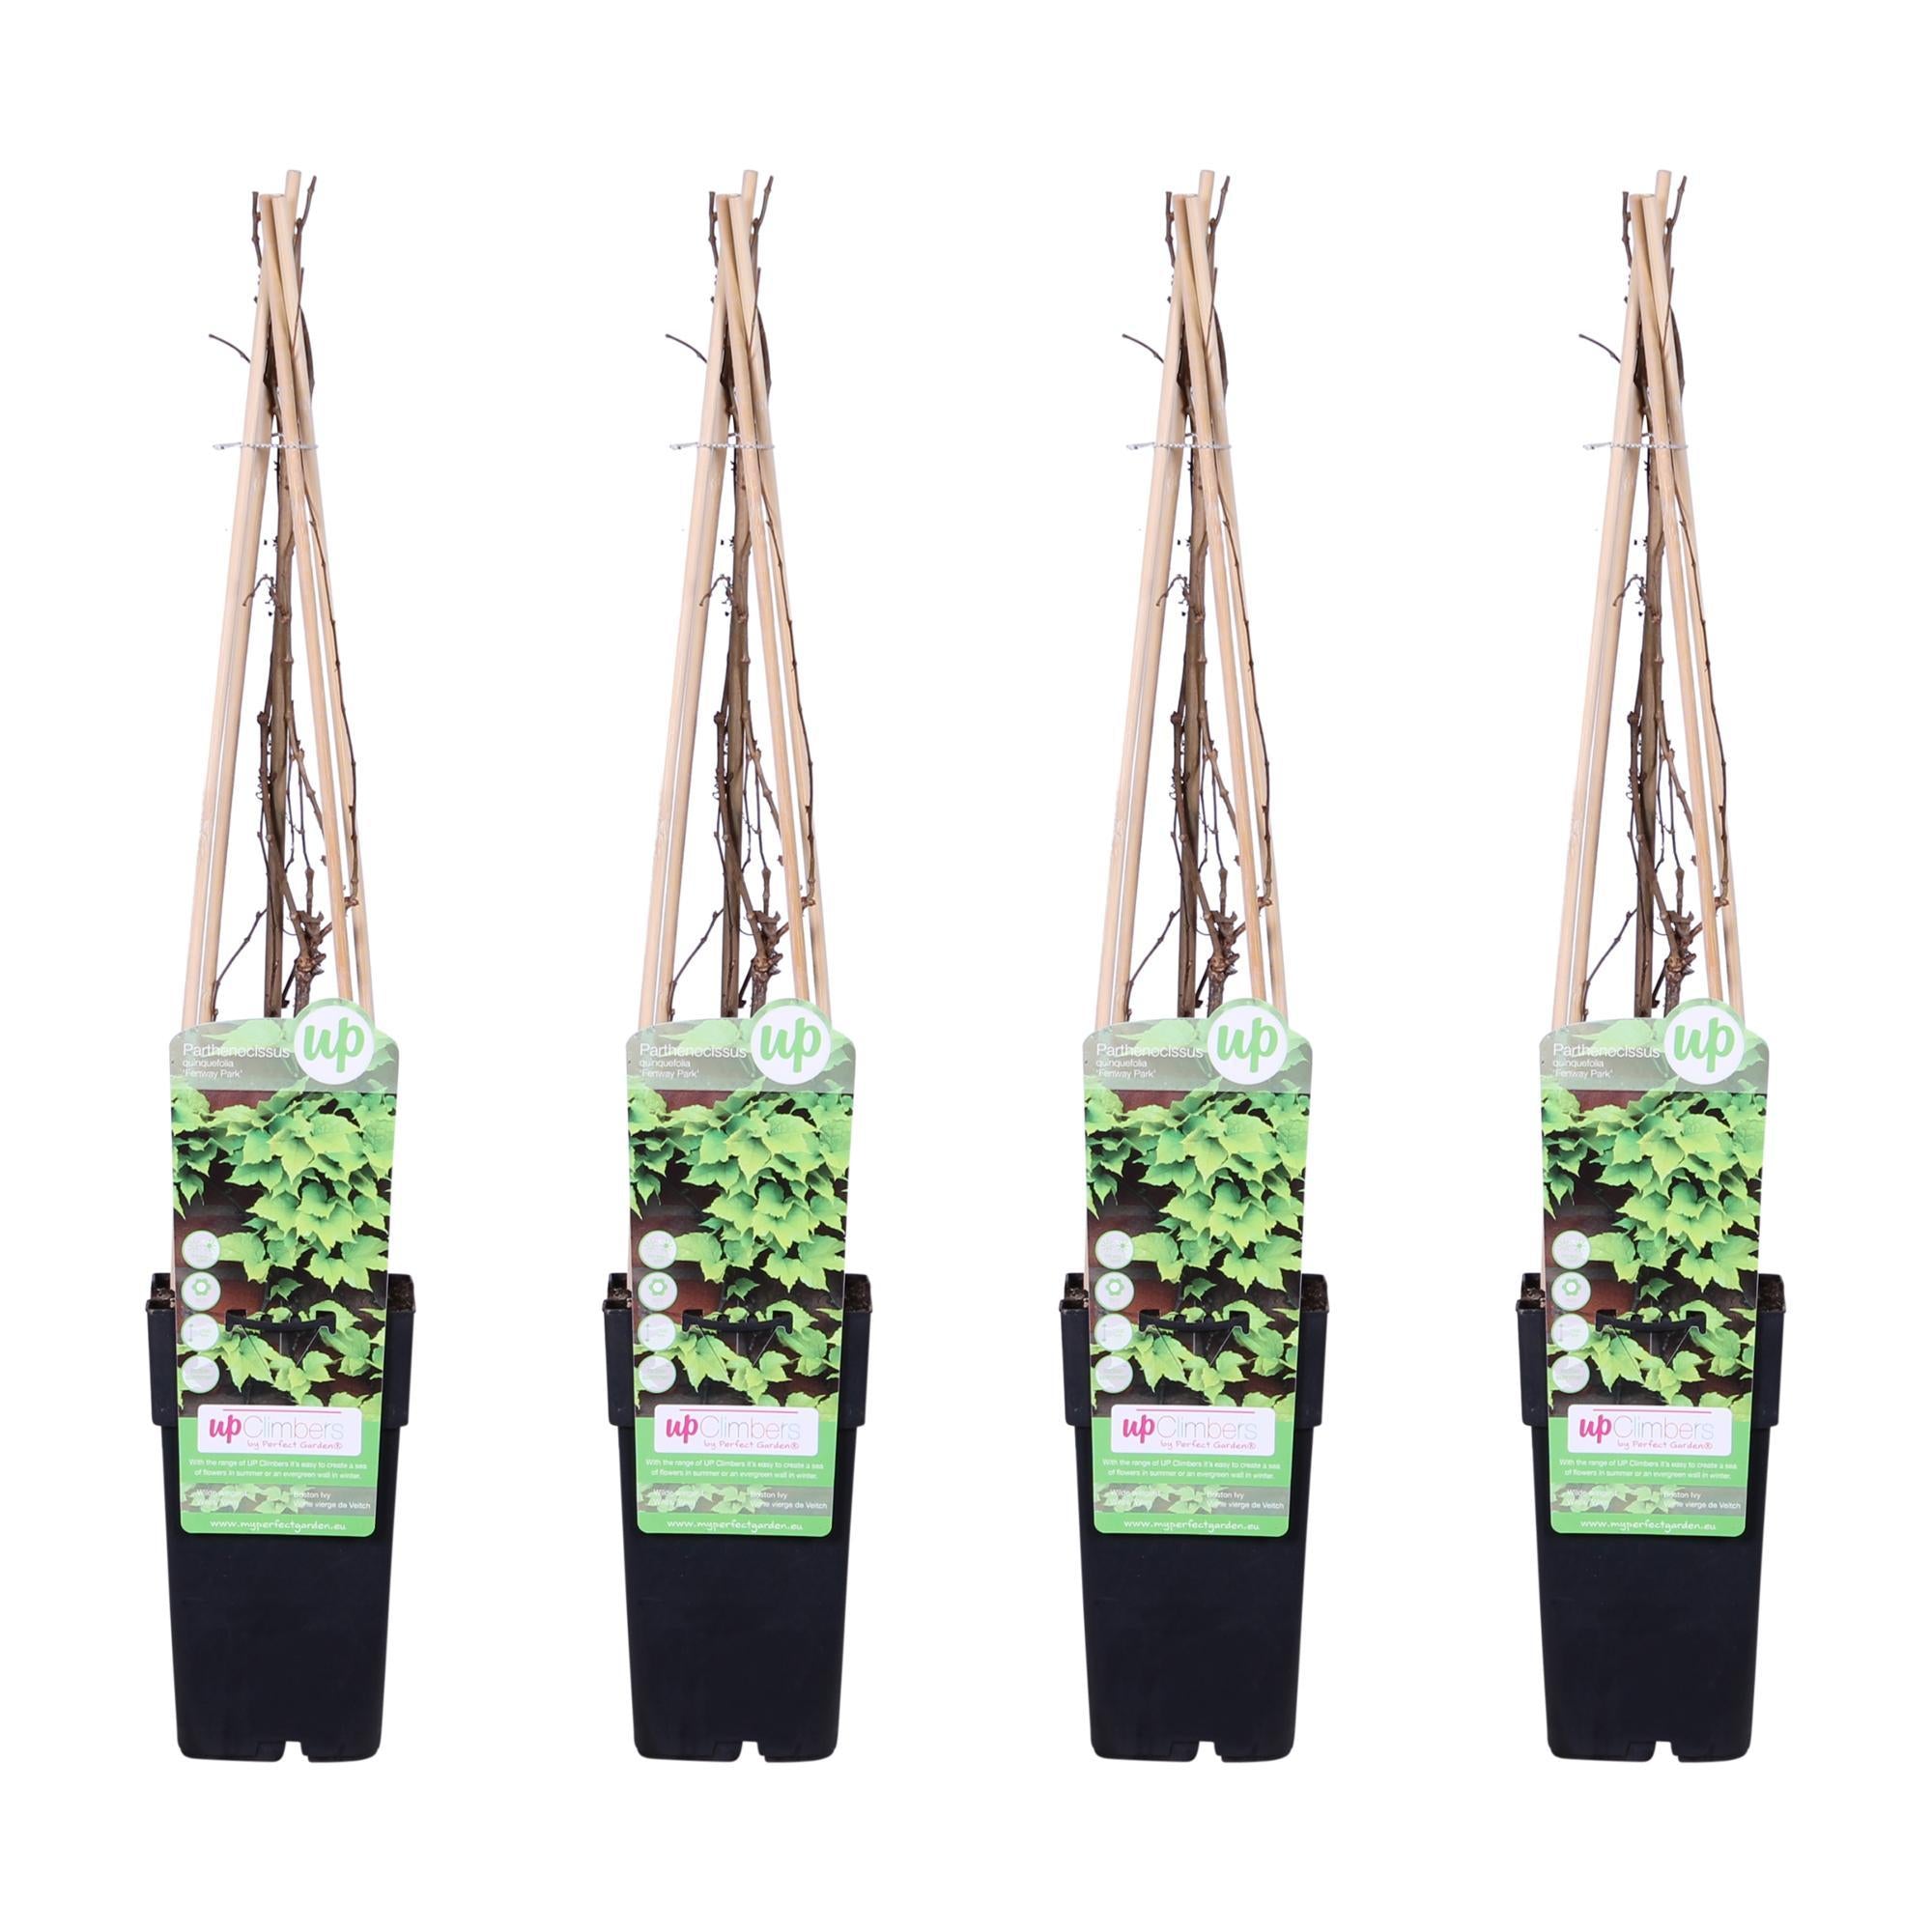 Everspring Parthenocissus tricuspidata 'veitch boskoop' - ↨65cm - ø15 4x - parthenocissus tricuspidata 'veitch boskoop' - ↨65cm - ø15